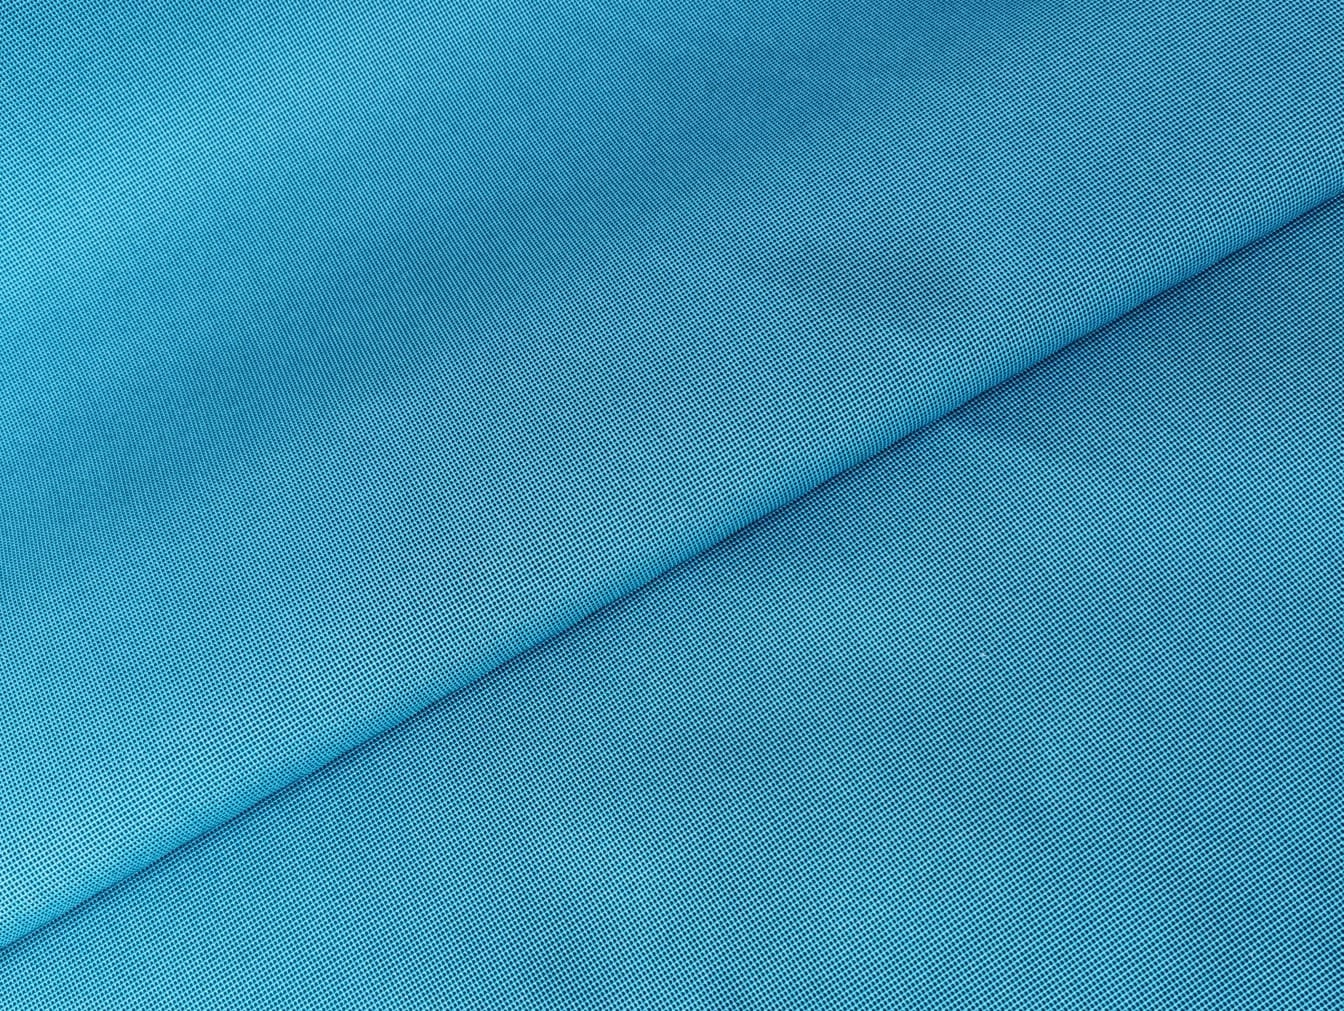 Клеенка тканевая с PU покрытием GARDEN, 1,7*20 м., мод. BLUE